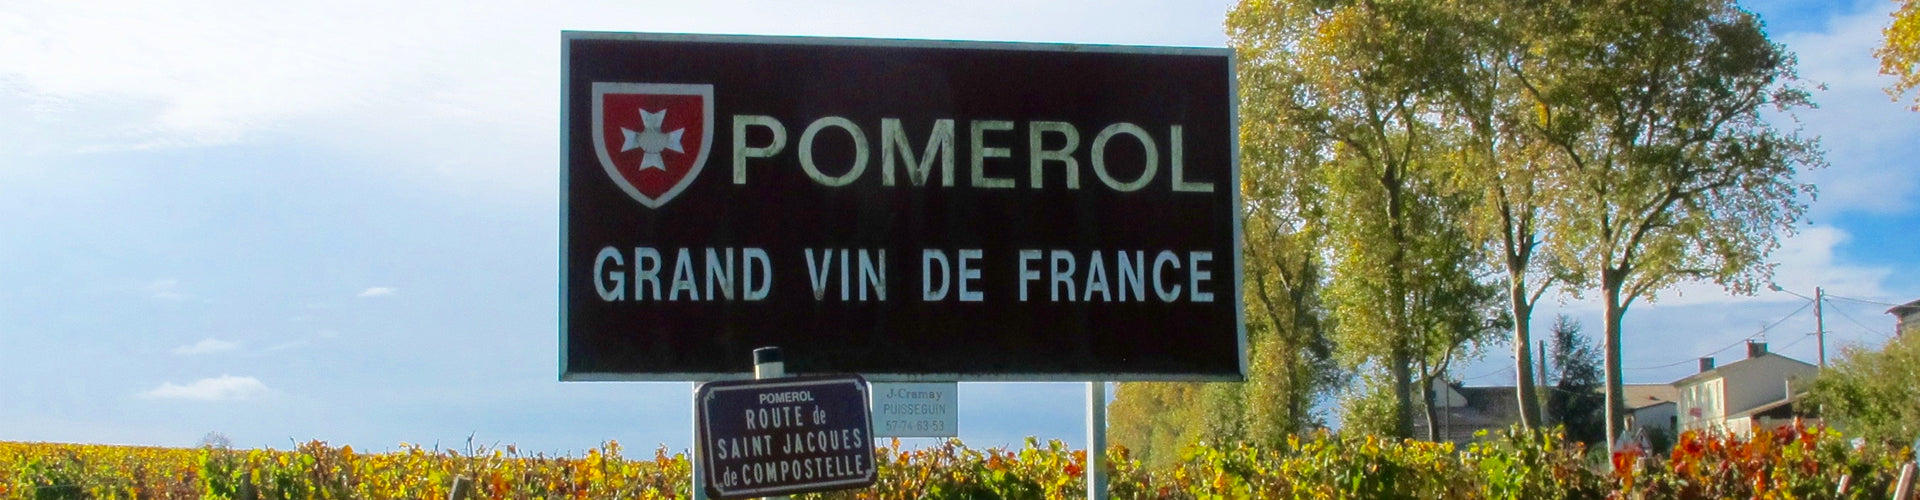 Pomerol Entrance Sign & Vineyards